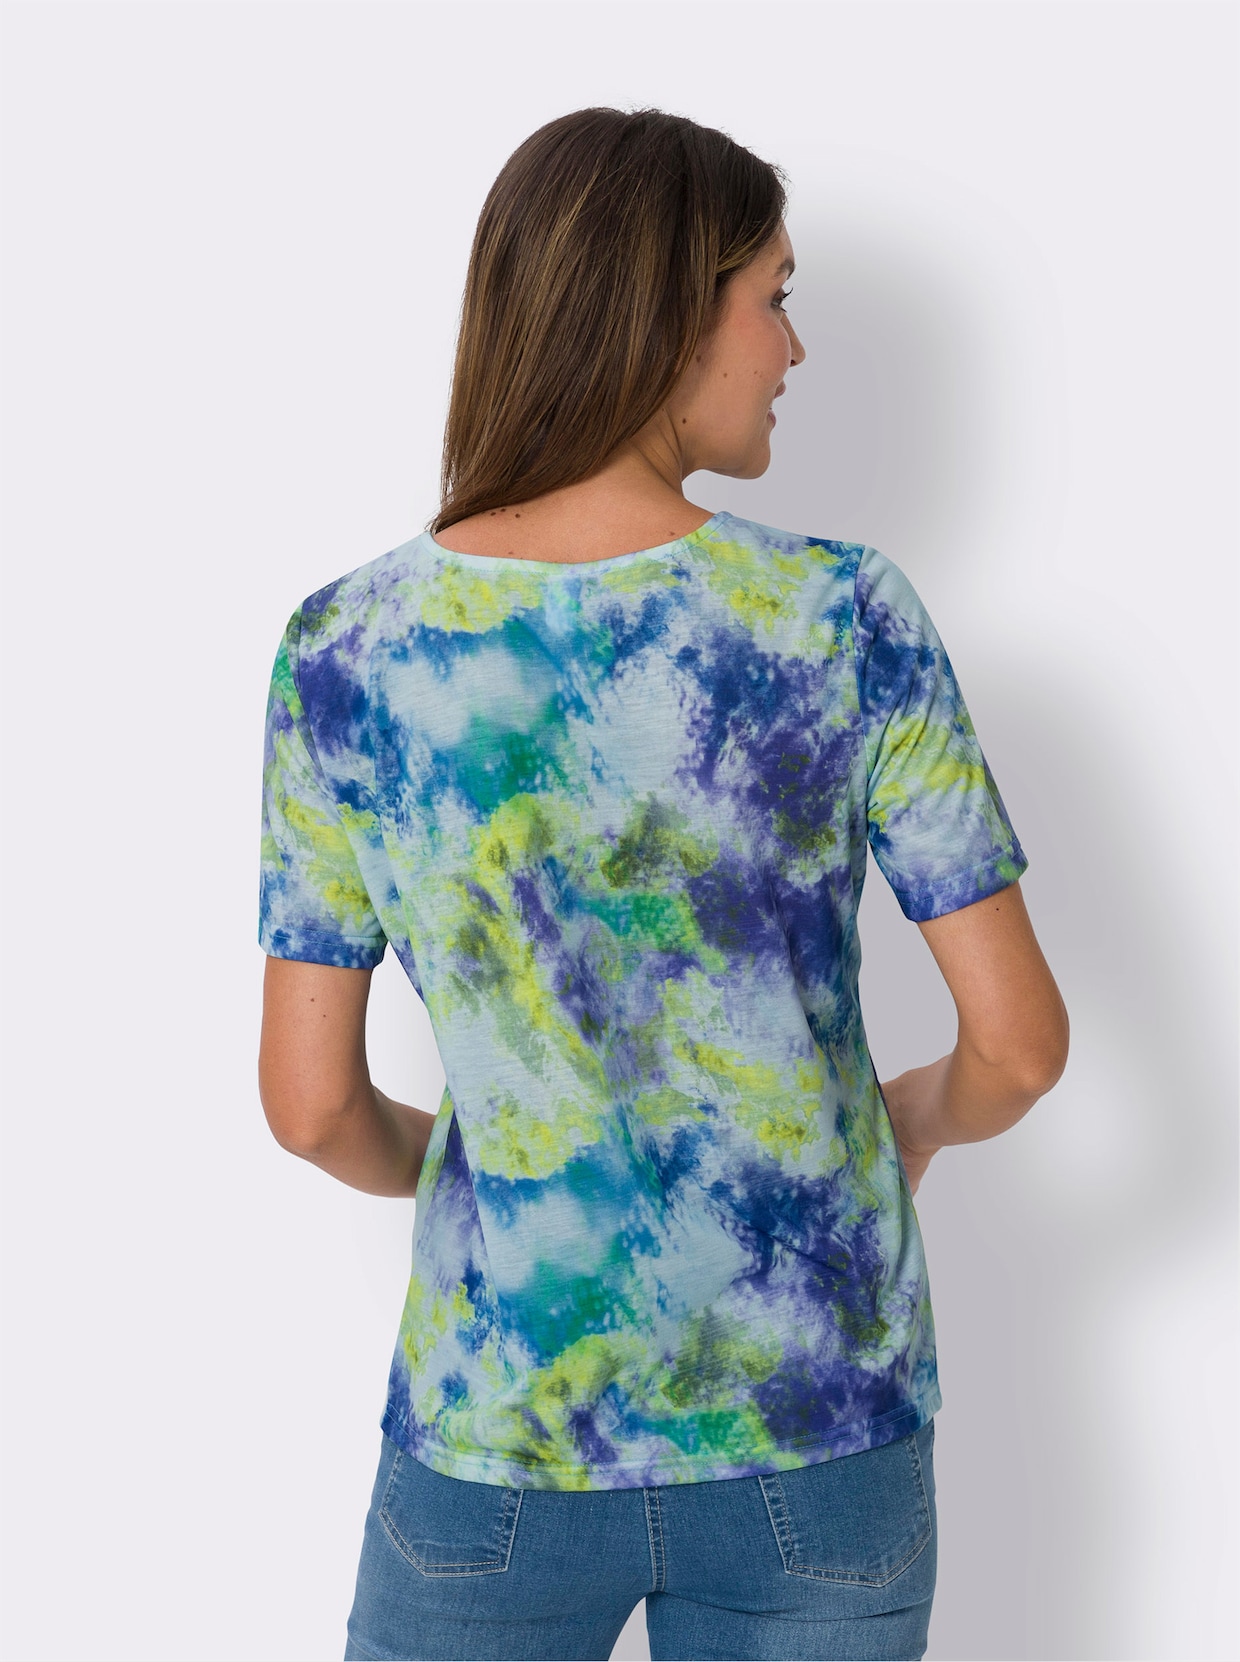 Tričko s krátkým rukávem - střední modrá-světlezelená-potisk